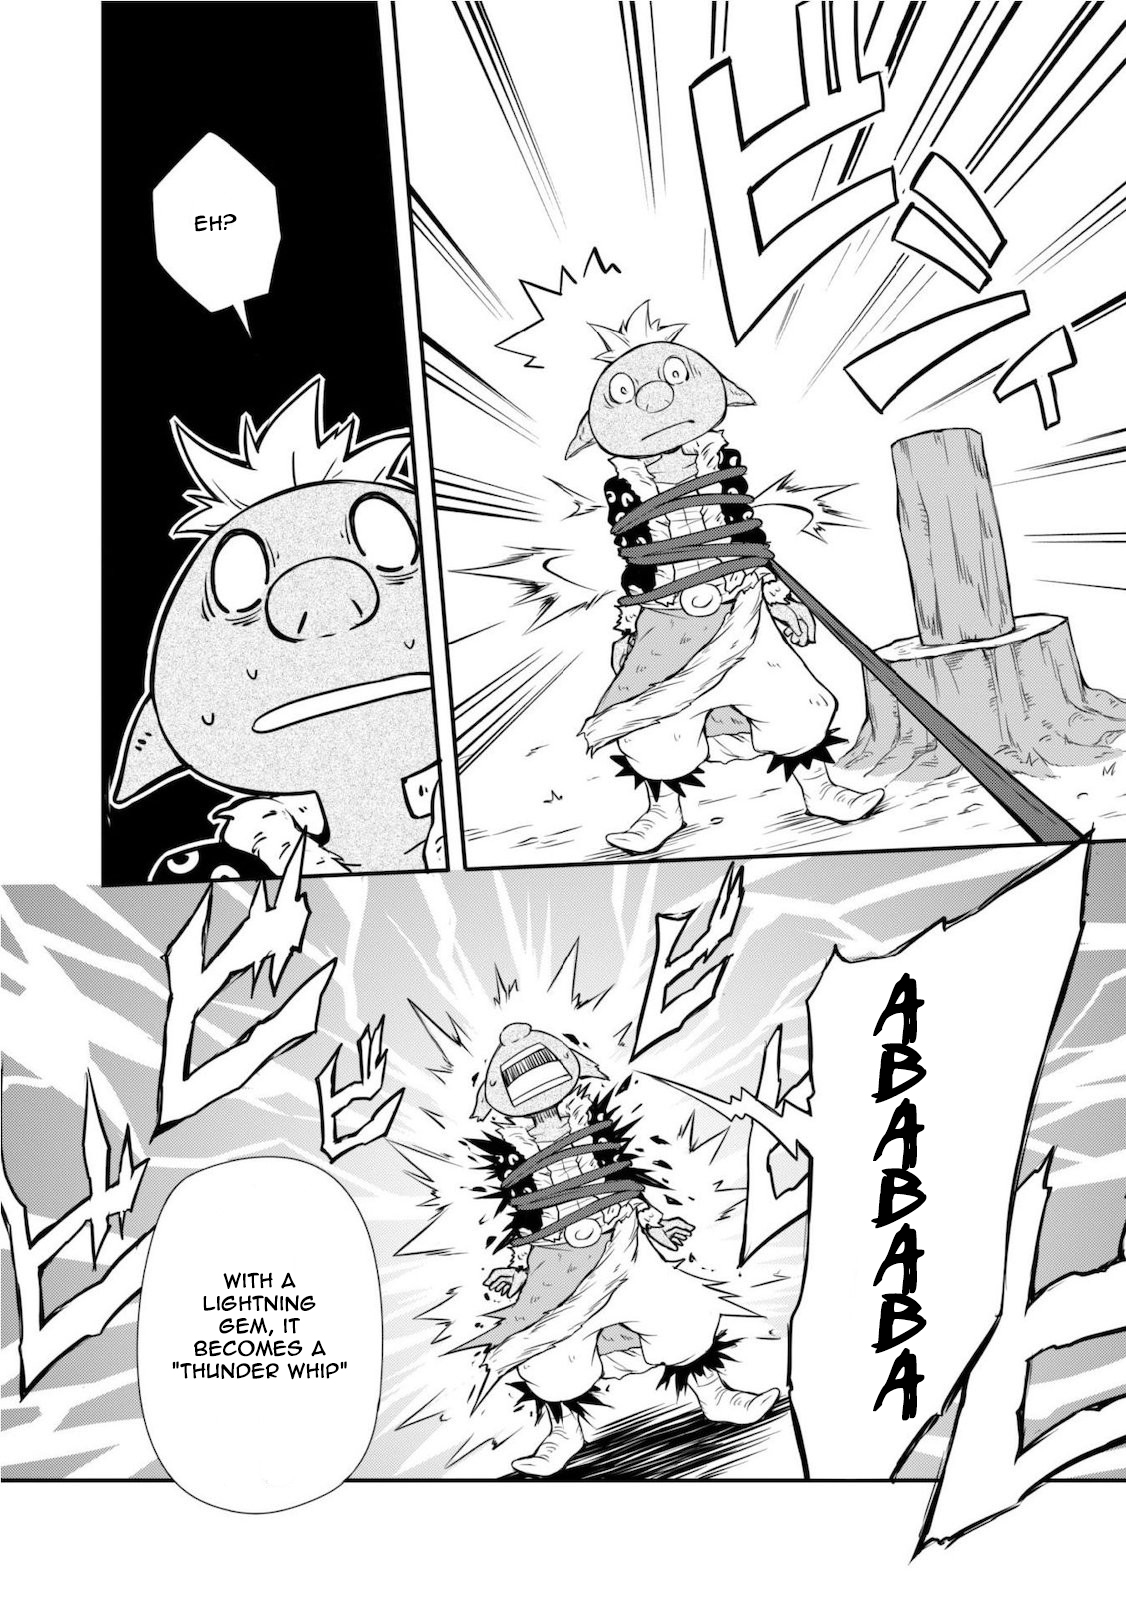 Tensei Shitara Slime Datta Ken: Mamono no Kuni no Arukikata Vol. 1 Ch. 3